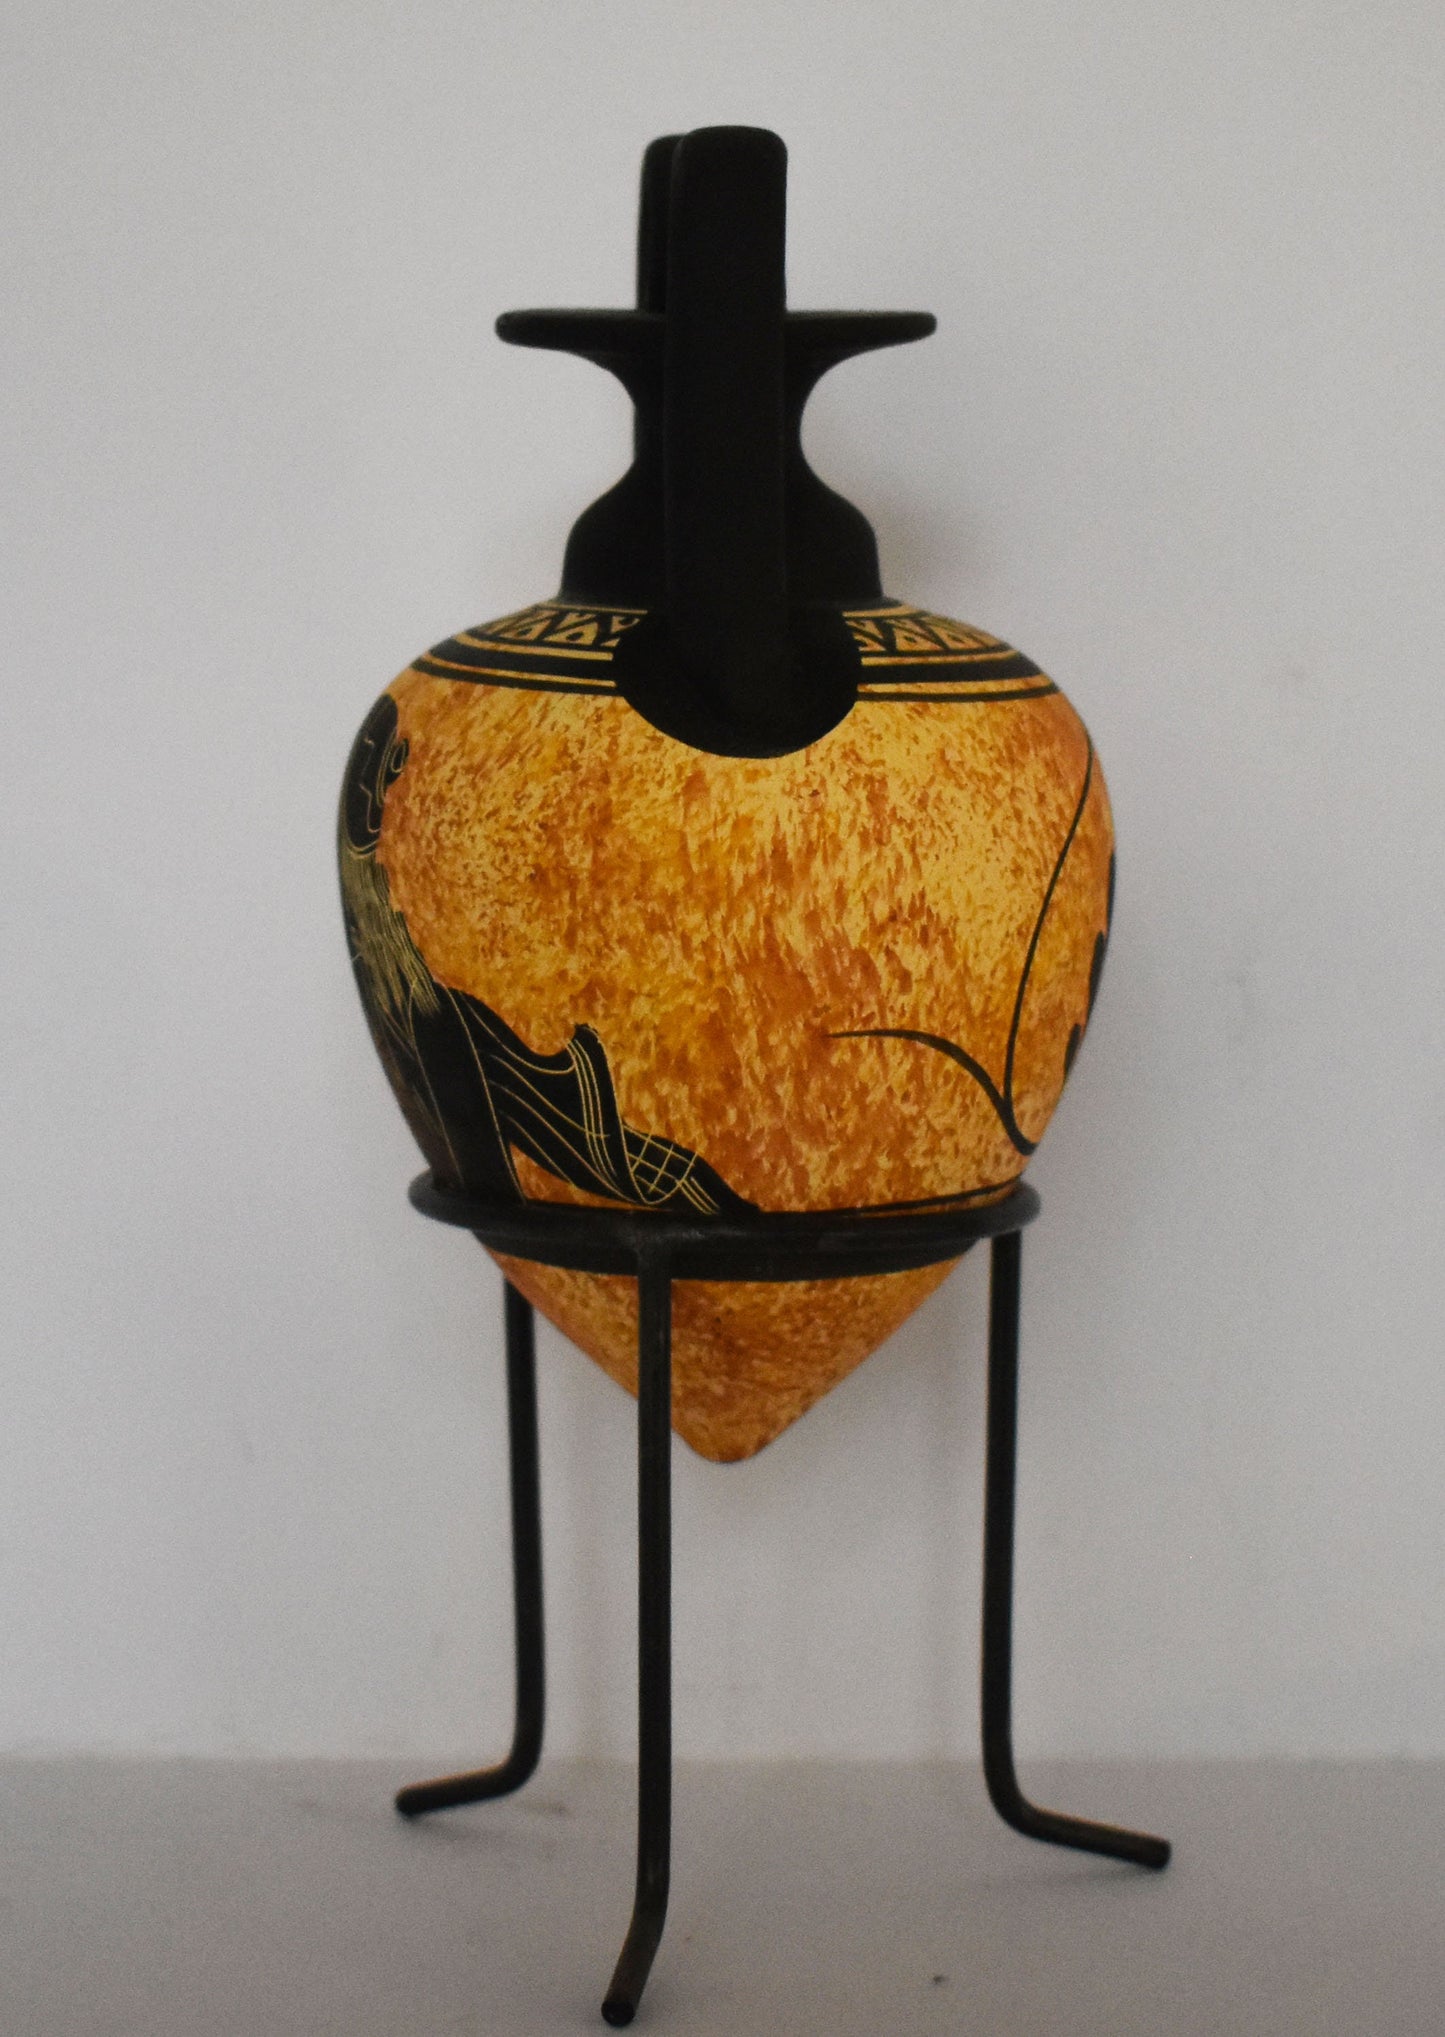 Rhyton - Vessel for Libations or Drinking -  Hephaestus - God of Blacksmiths,Fire, Craftsmen, Volcanoes- Floral design - Ceramic Vase